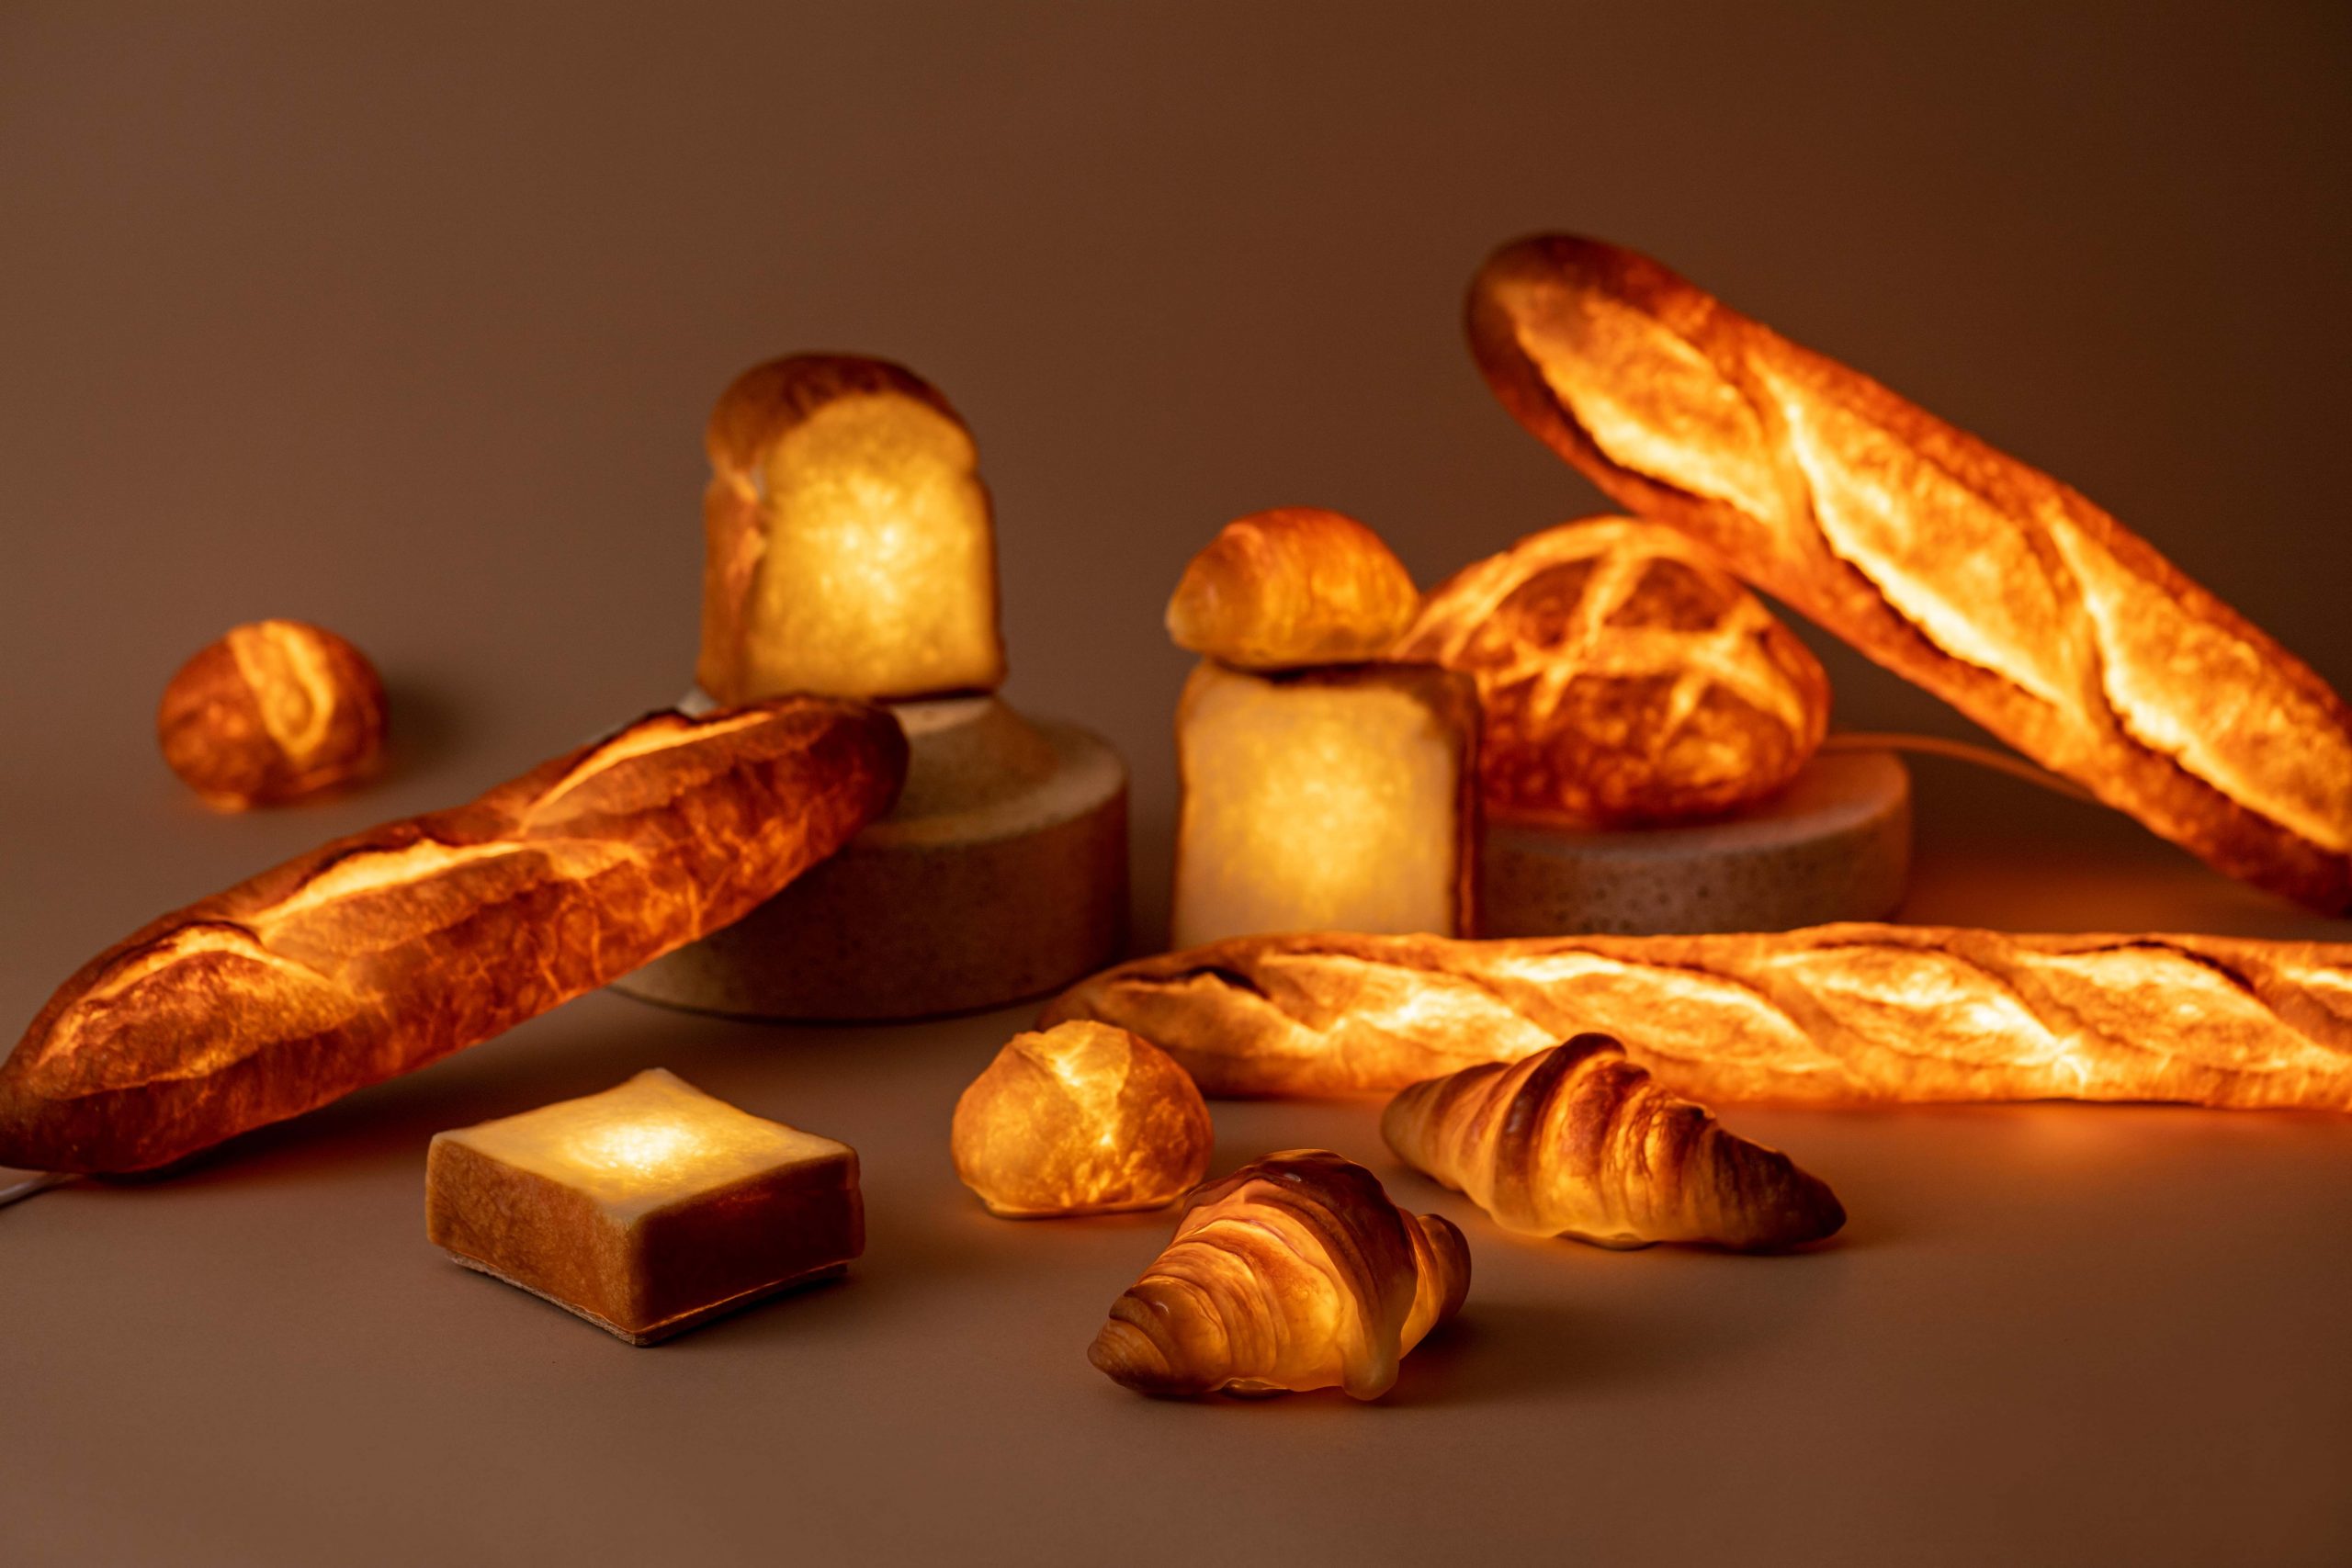 食べるだけじゃないパンの魅力に取り憑かれて、パンで作ったランプ「パンプシェード」